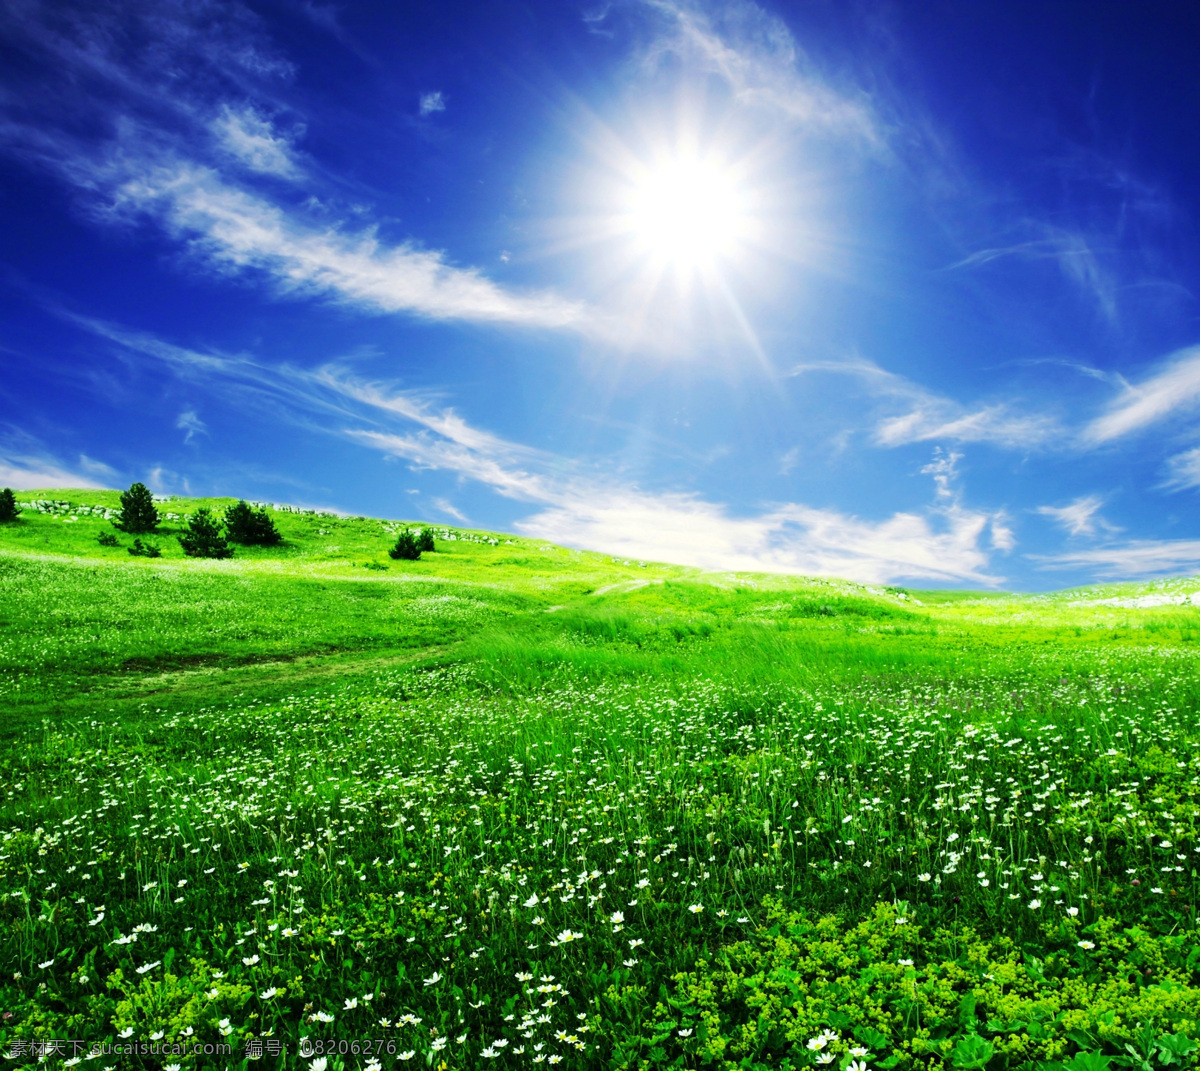 蓝天草地 摄影素材 风光摄影 风景 美丽景色 蓝天 天空 白云 日光 太阳 草地 绿地 野花 风光图片 自然风光摄影 自然风景 自然景观